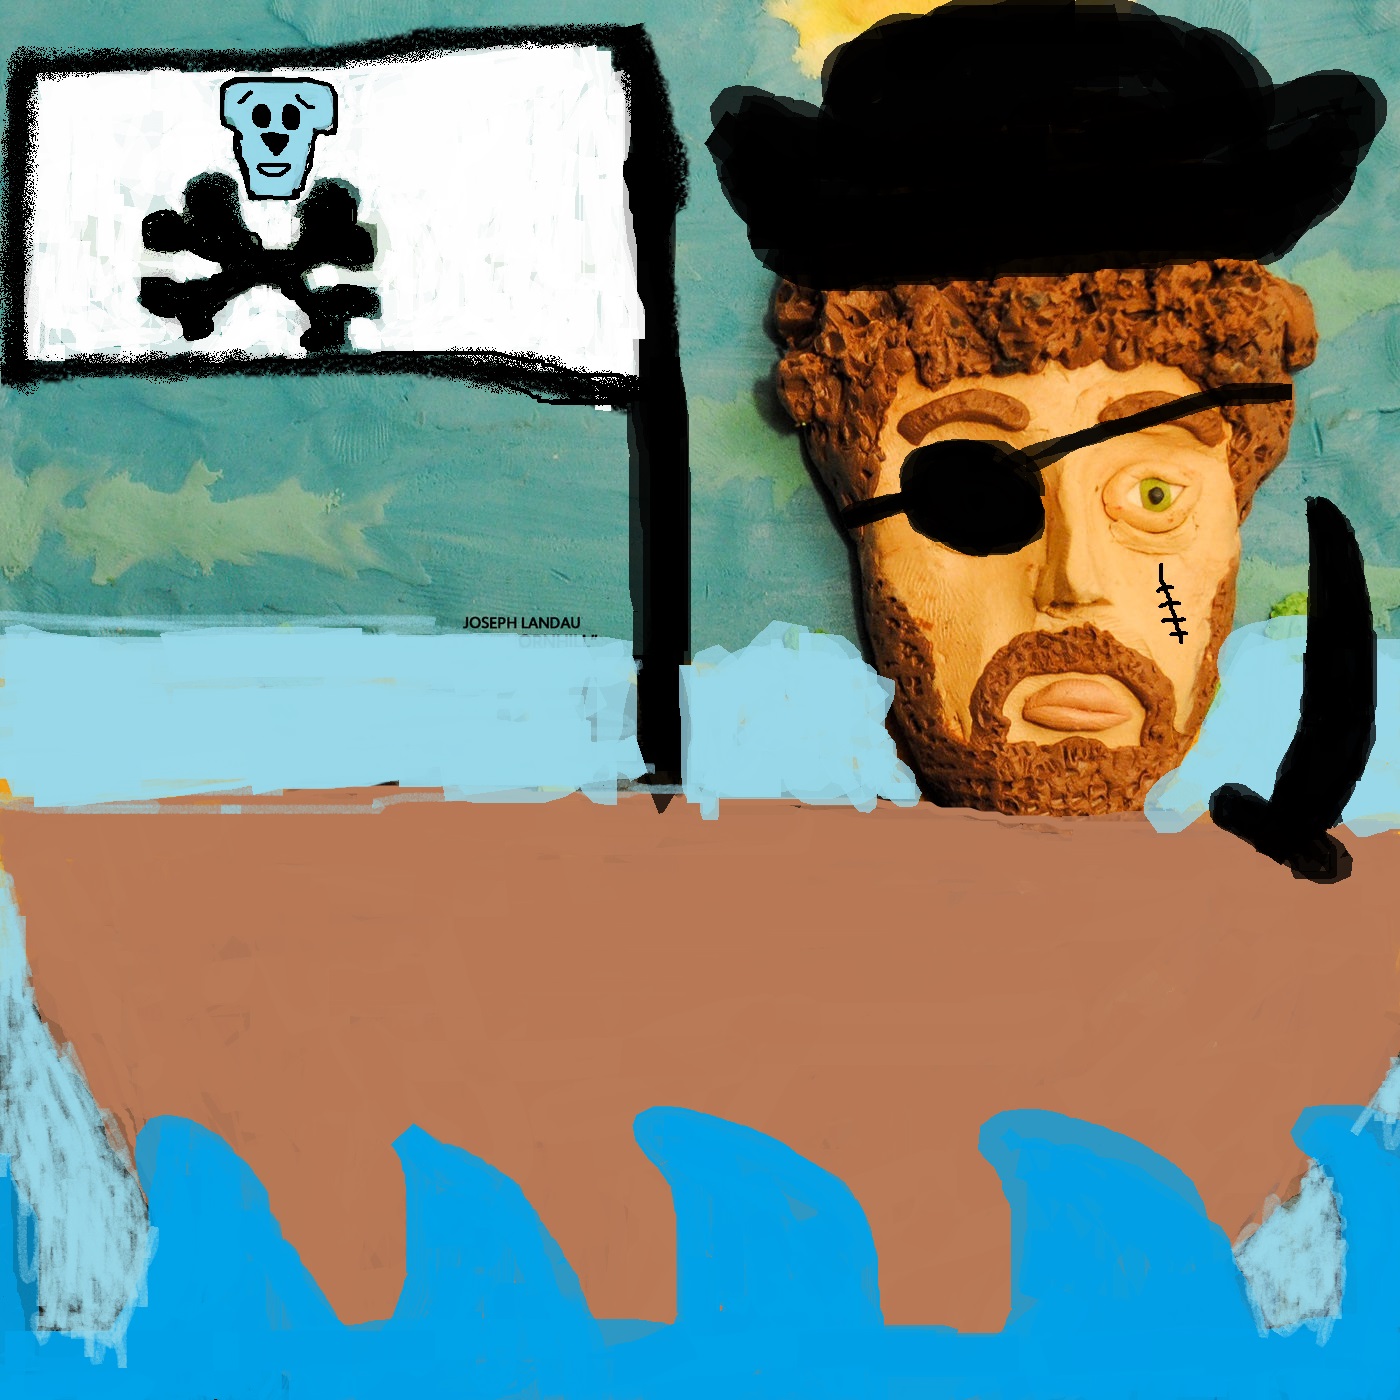 Pirate Joe.jpg